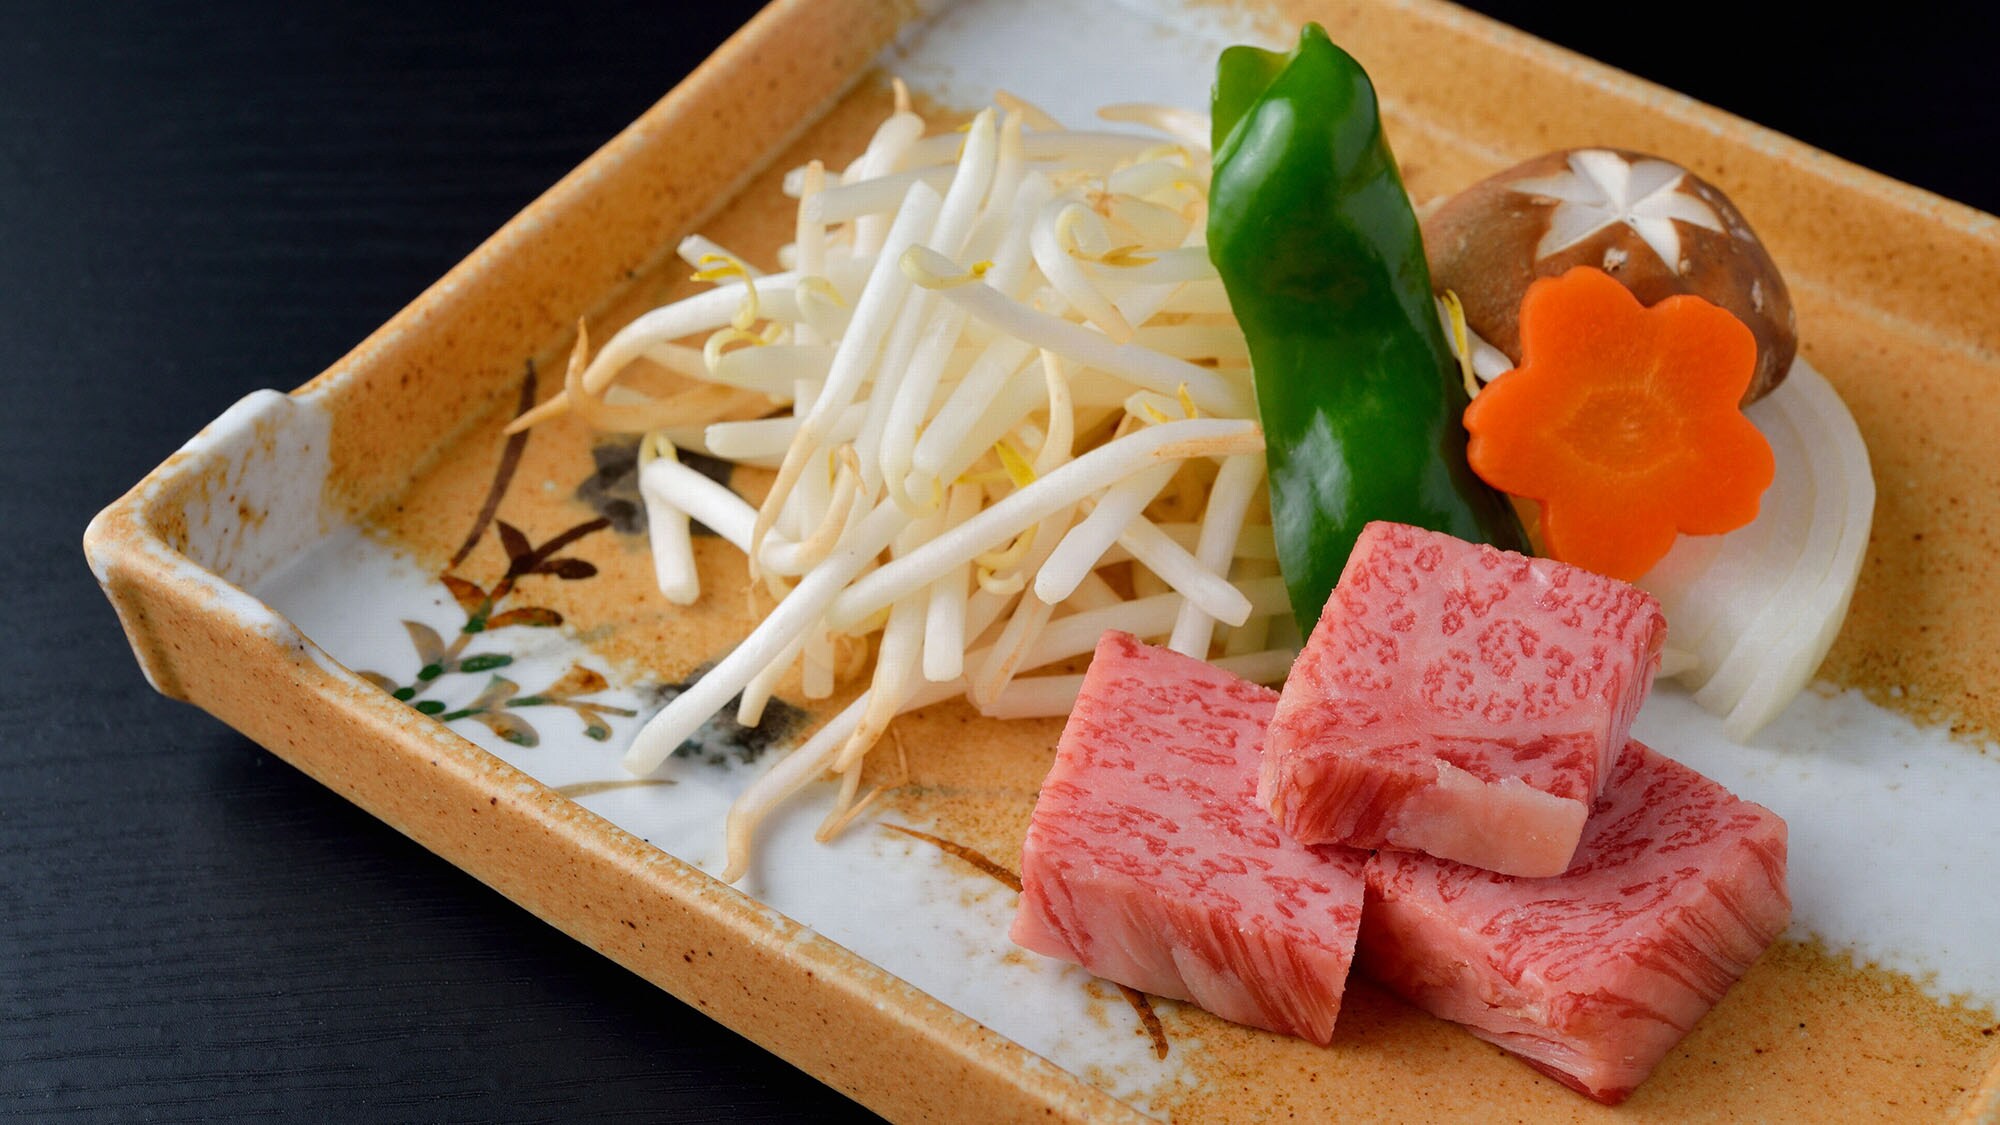 Daging sapi Matsusaka adalah merek daging sapi domestik tertinggi yang dibanggakan Prefektur Mie.